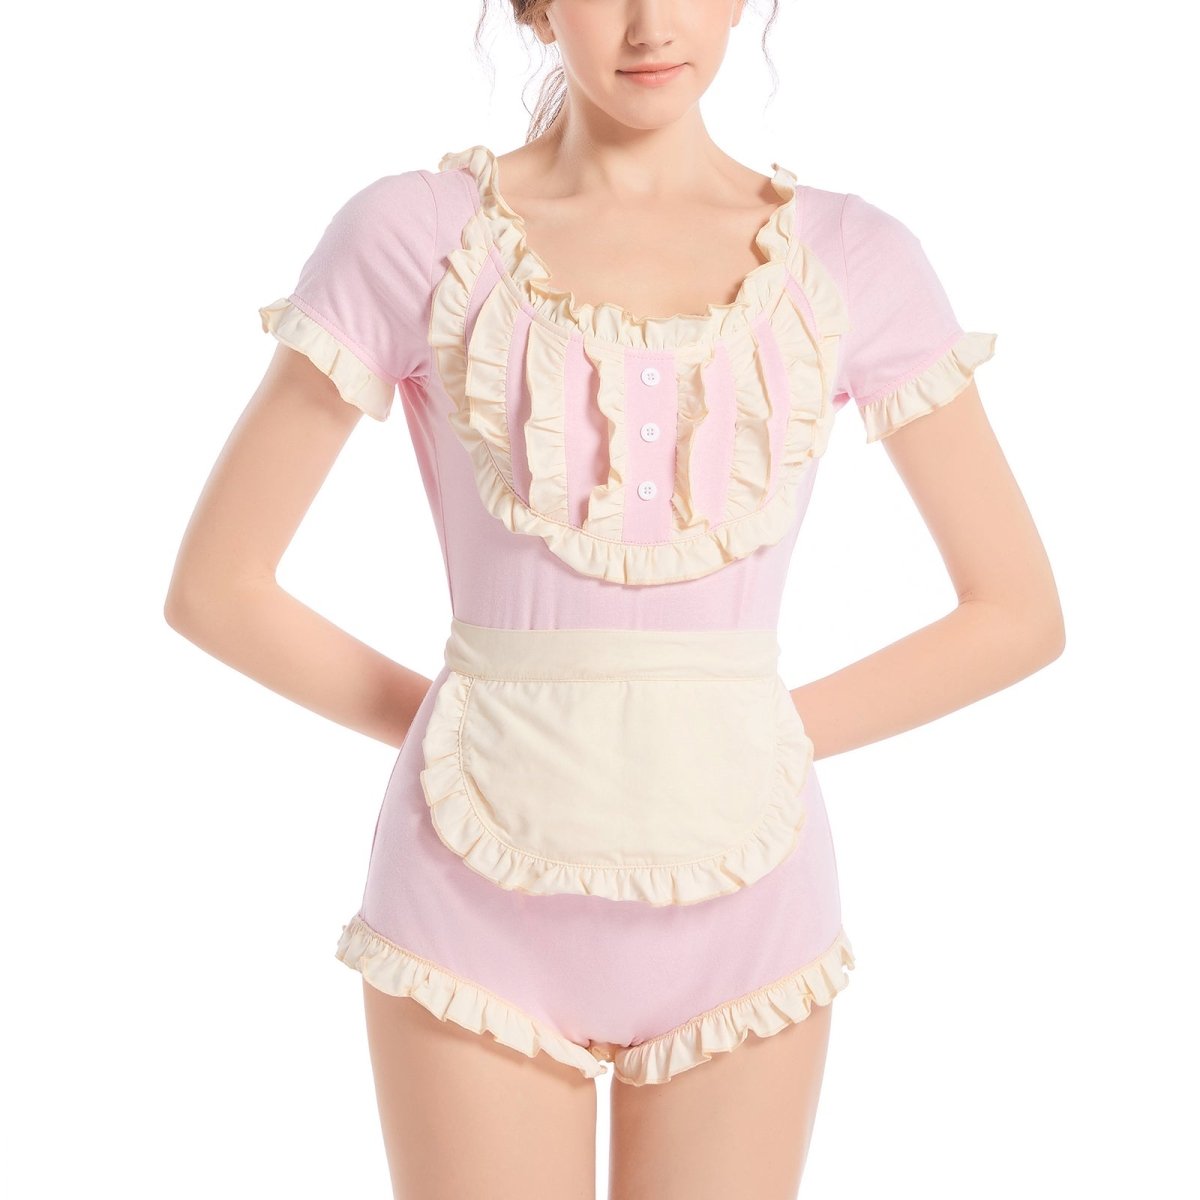 Landofgenie ABDL Cotton Bodysuit Adult Baby Onesie - Halloween